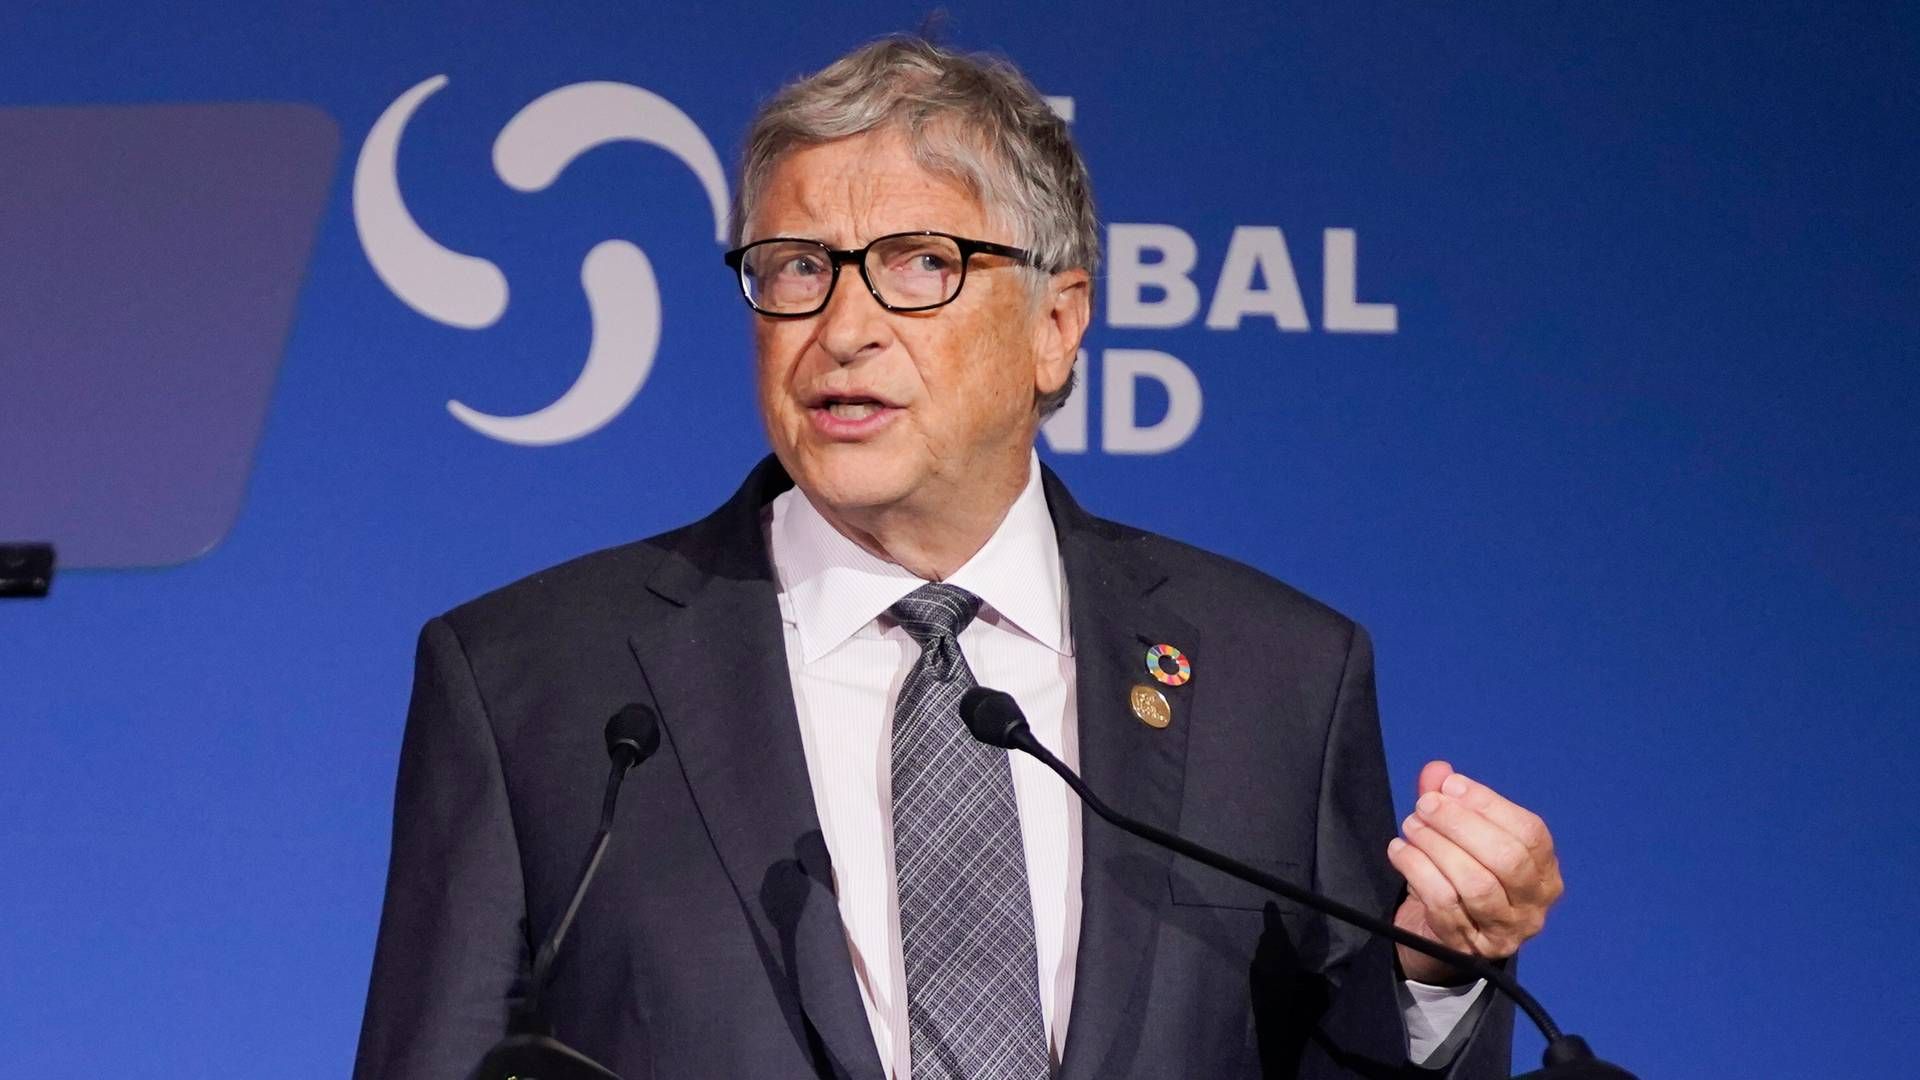 Bill Gates er grundlægger af Microsoft og driver i dag milliardfonden Bill & Melinda Gates Foundation.